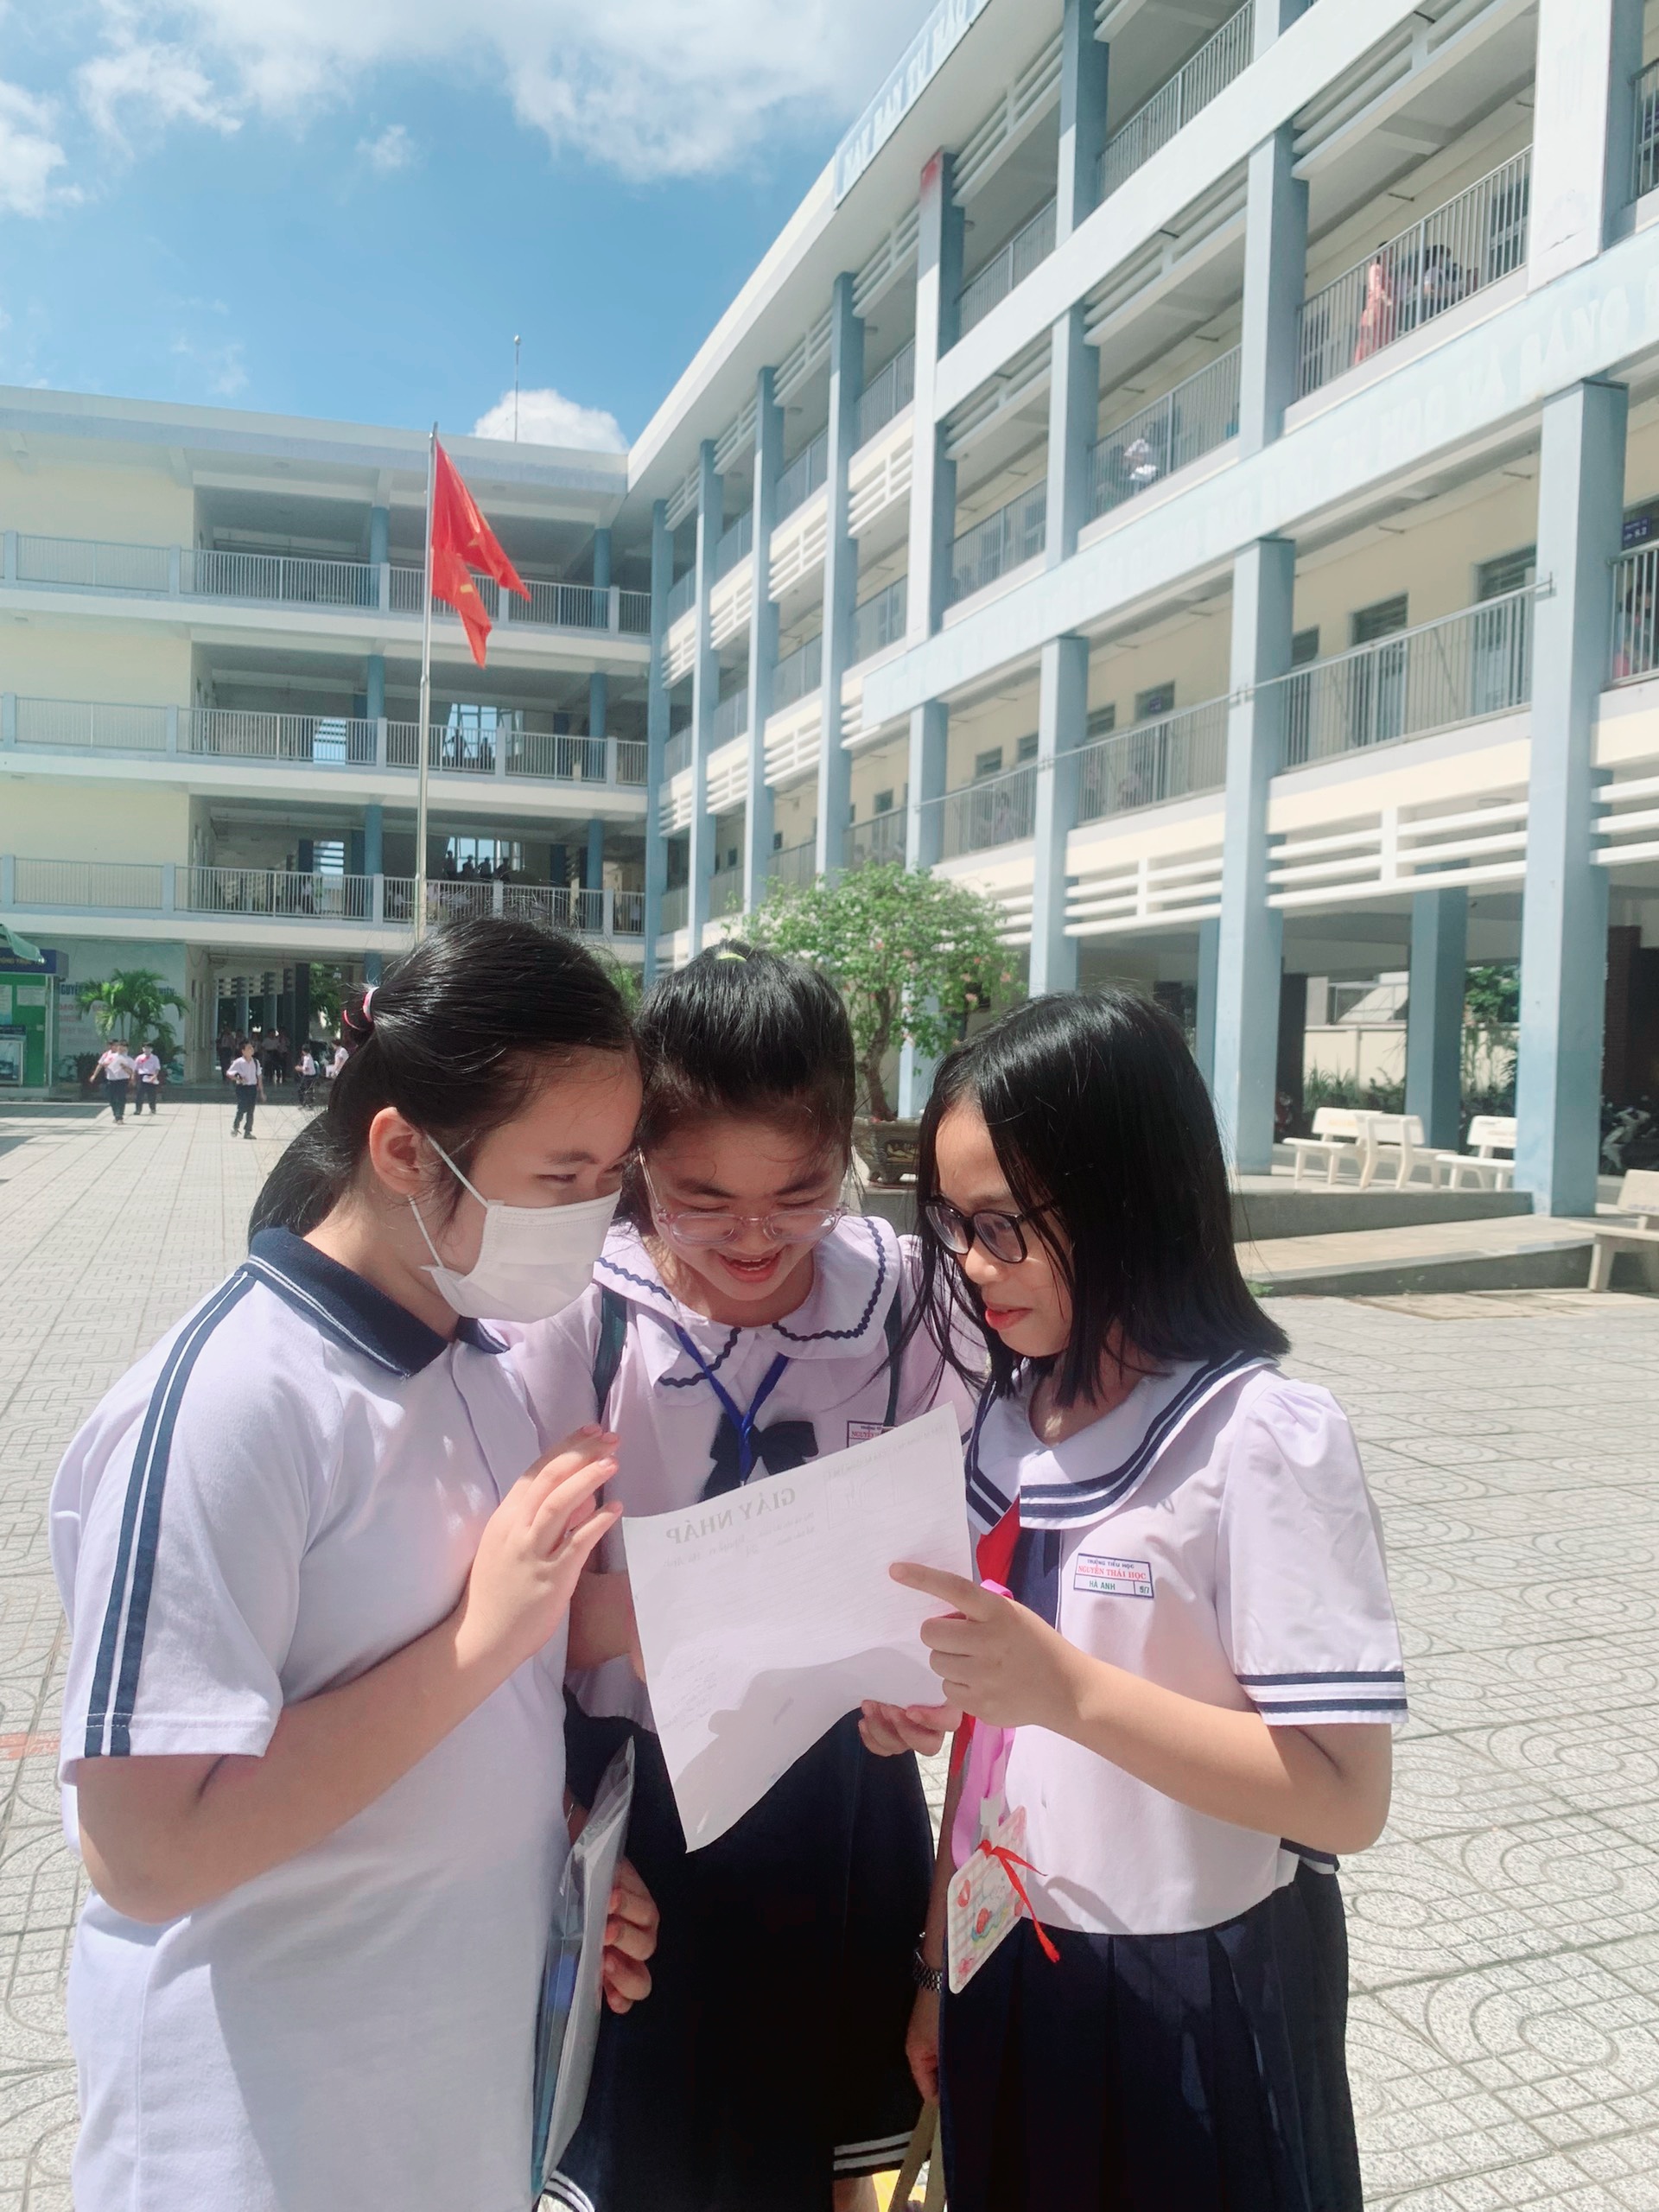 HS tham dự bài khảo sát năng lực để dự tuyển lớp 6 nguồn Trường THCS Nguyễn An Ninh.